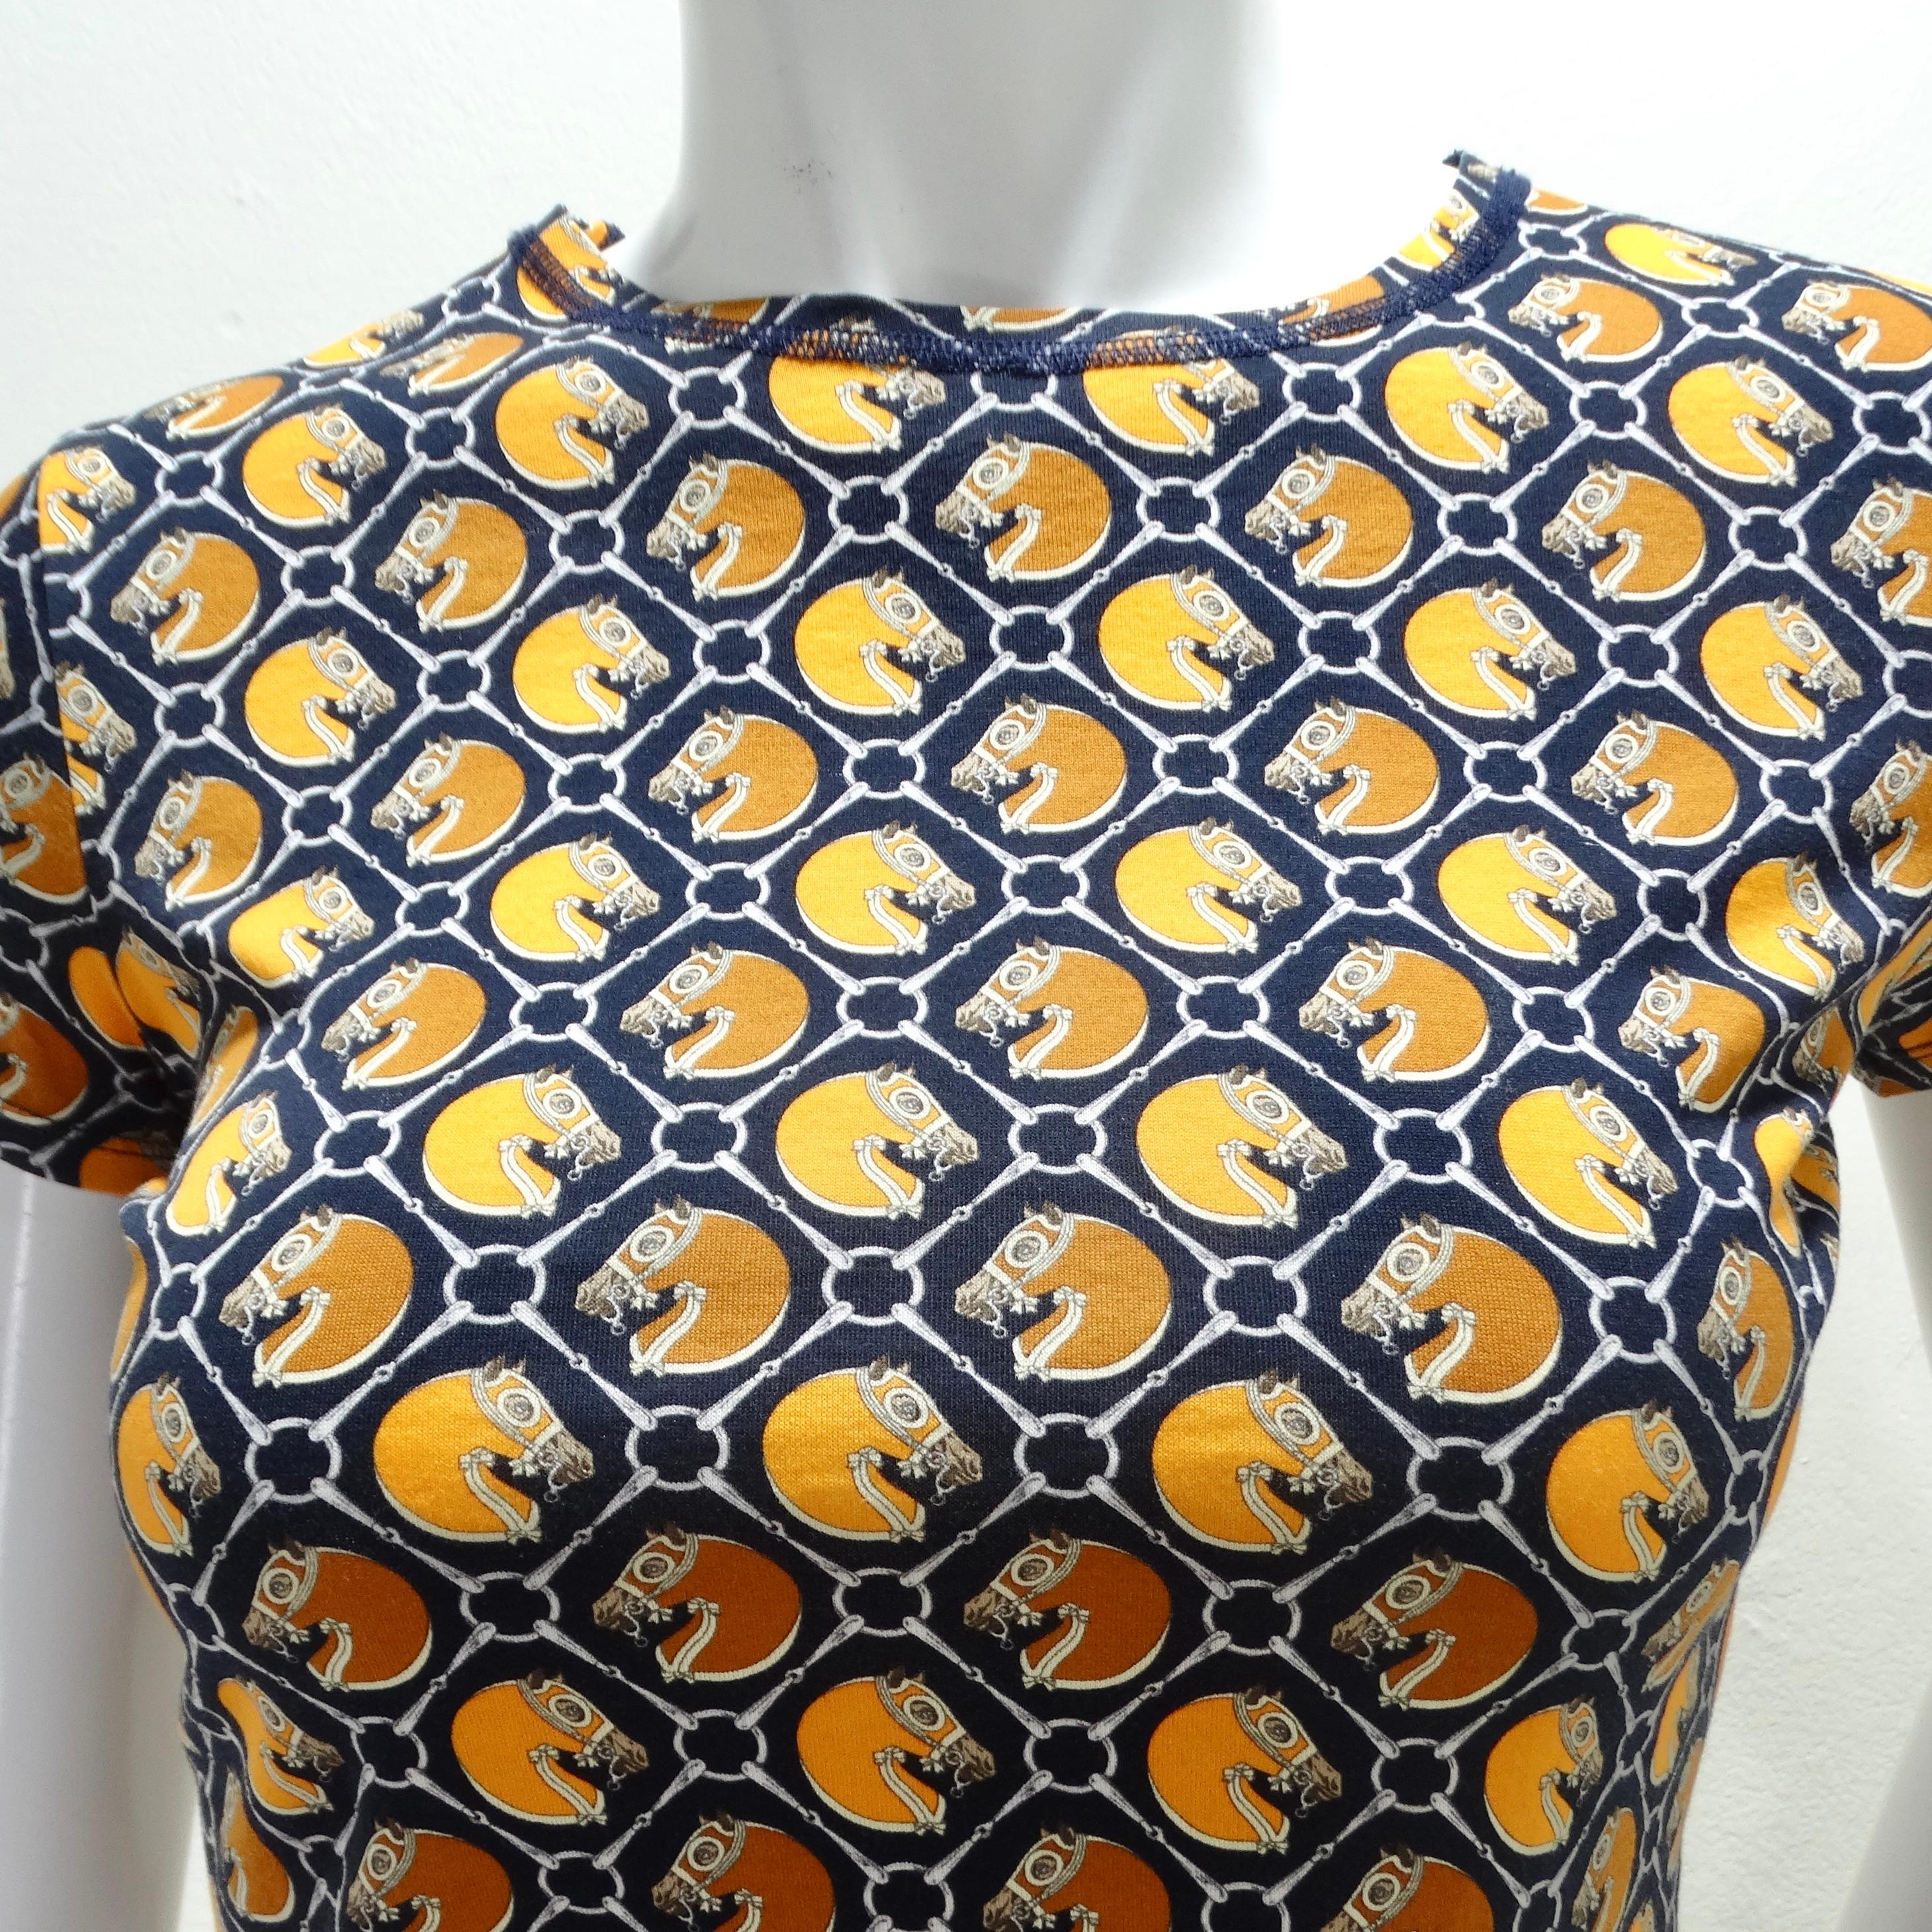 Voici le T-shirt en coton imprimé Hermes Vintage, un classique de la garde-robe qui allie harmonieusement confort et élégance intemporelle. Ce t-shirt en coton, orné d'un imprimé de chevaux blanc, orange et bleu marine sur toute sa surface, dégage